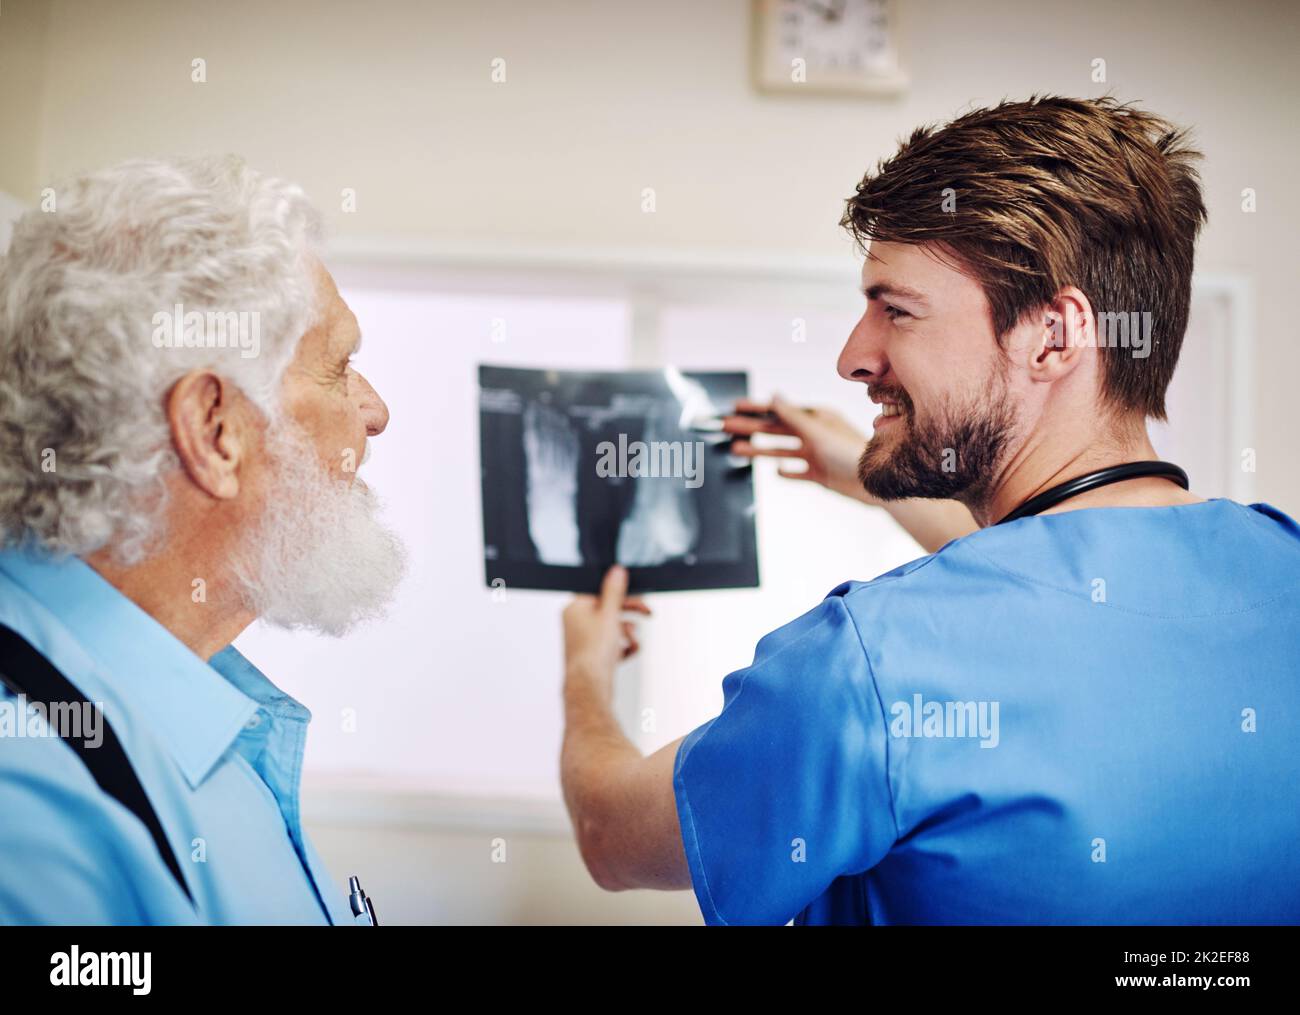 Vedi theres niente di cui preoccuparsi. Shot di un giovane medico e del suo paziente anziano che guardano insieme una radiografia. Foto Stock